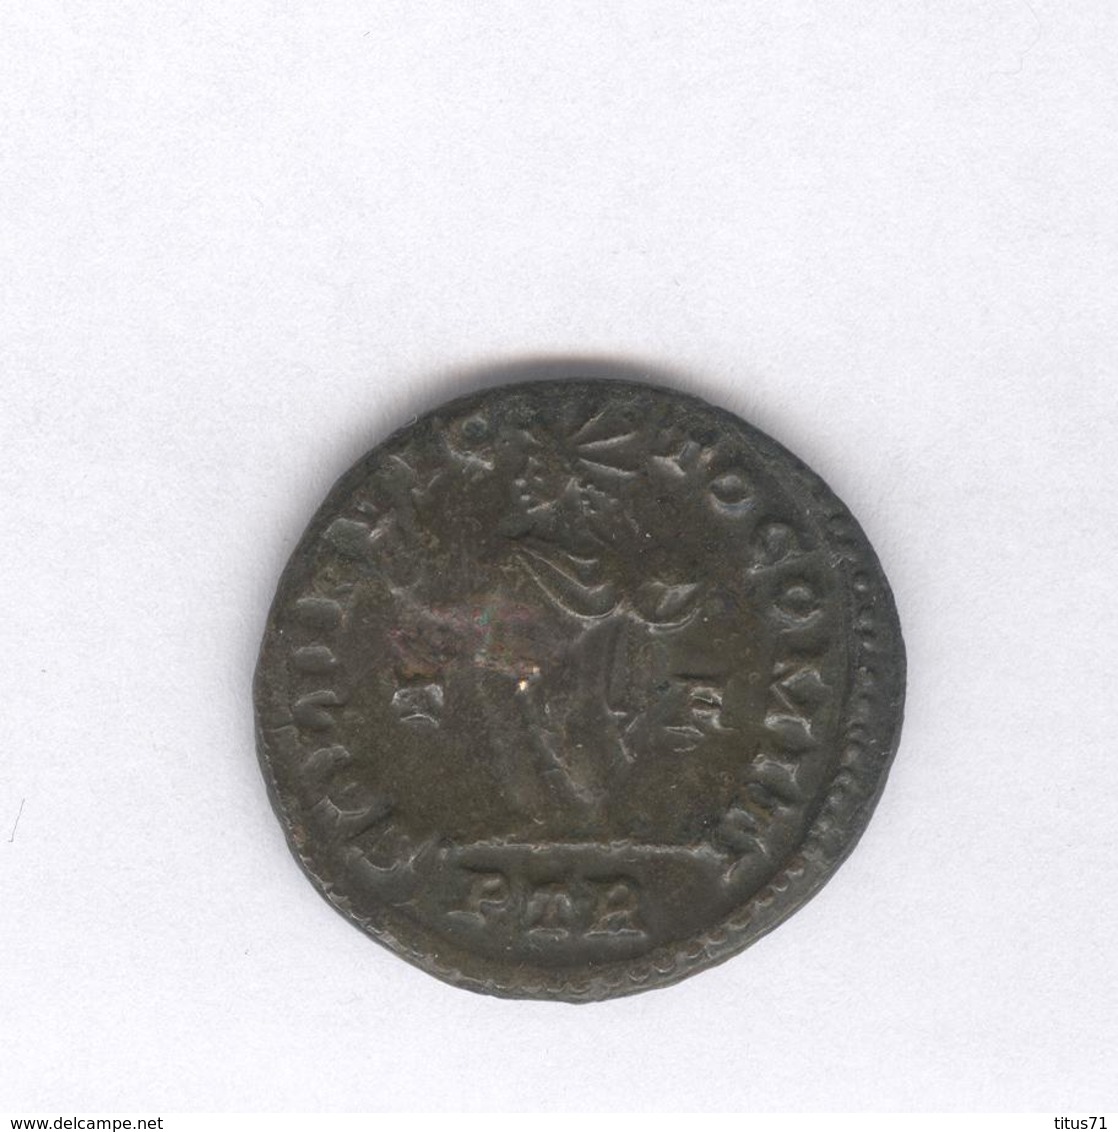 Follis Constantin - Soli Invicto Comiti - 309-310 - Monnaie Rome Antique - Lot 21 - El Imperio Christiano (307 / 363)